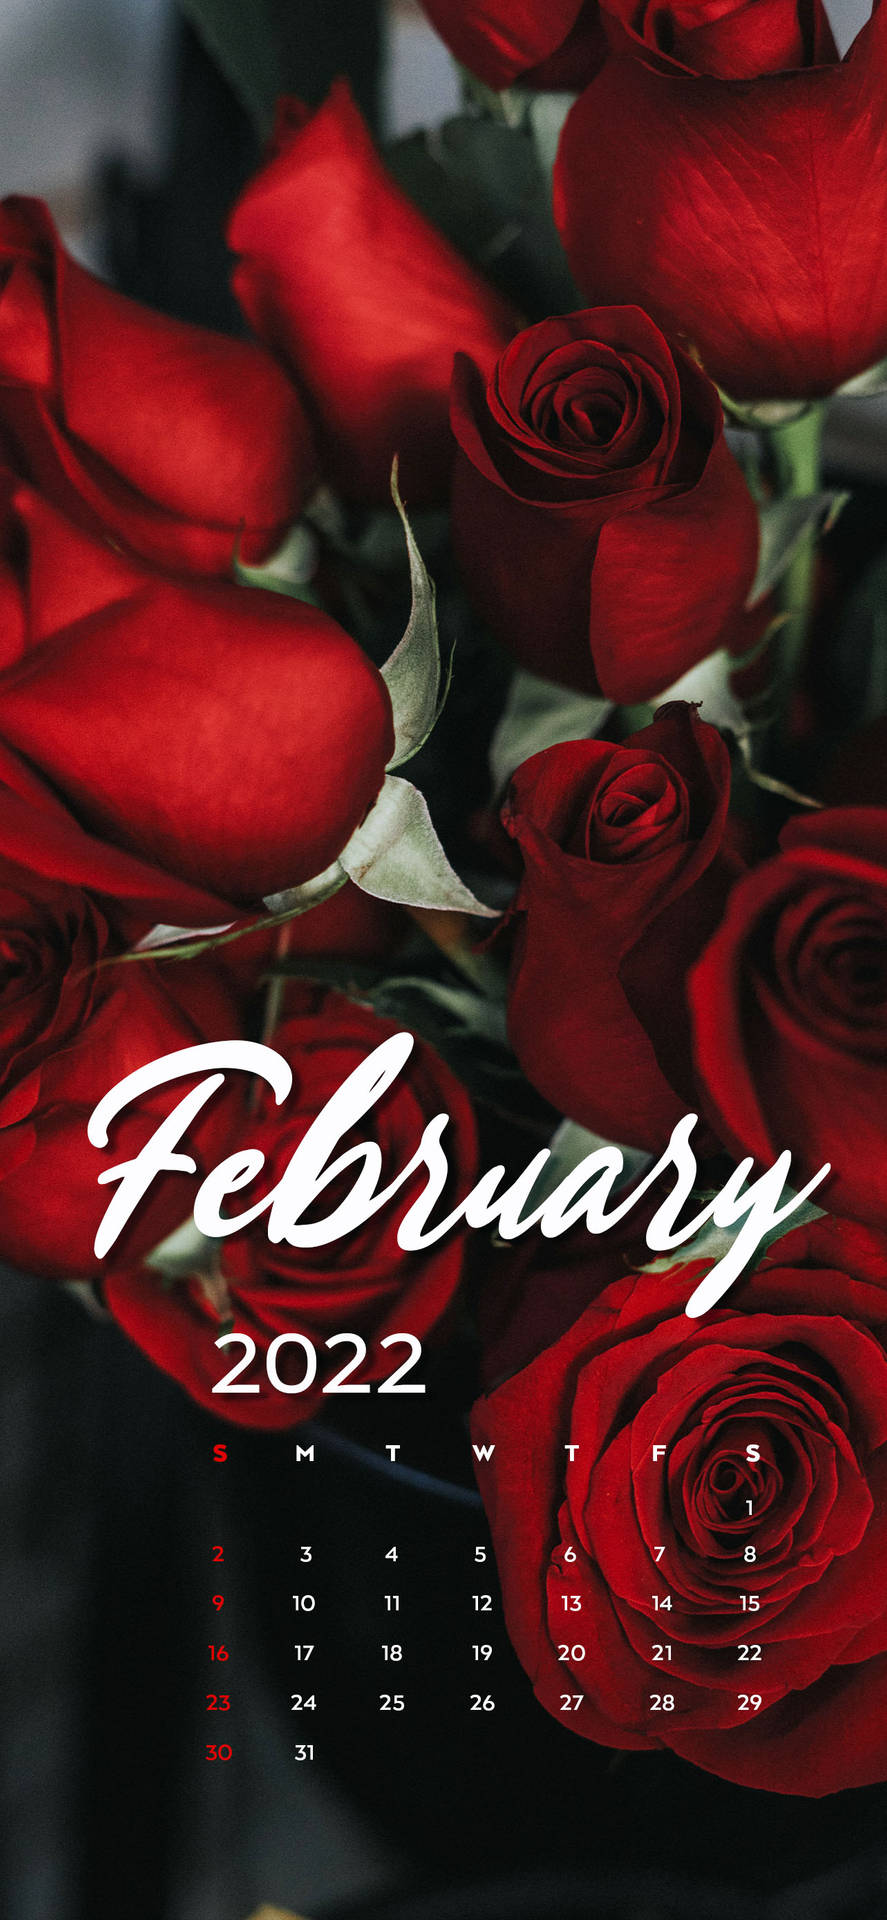 February 2022 Red Roses Calendar Wallpaper